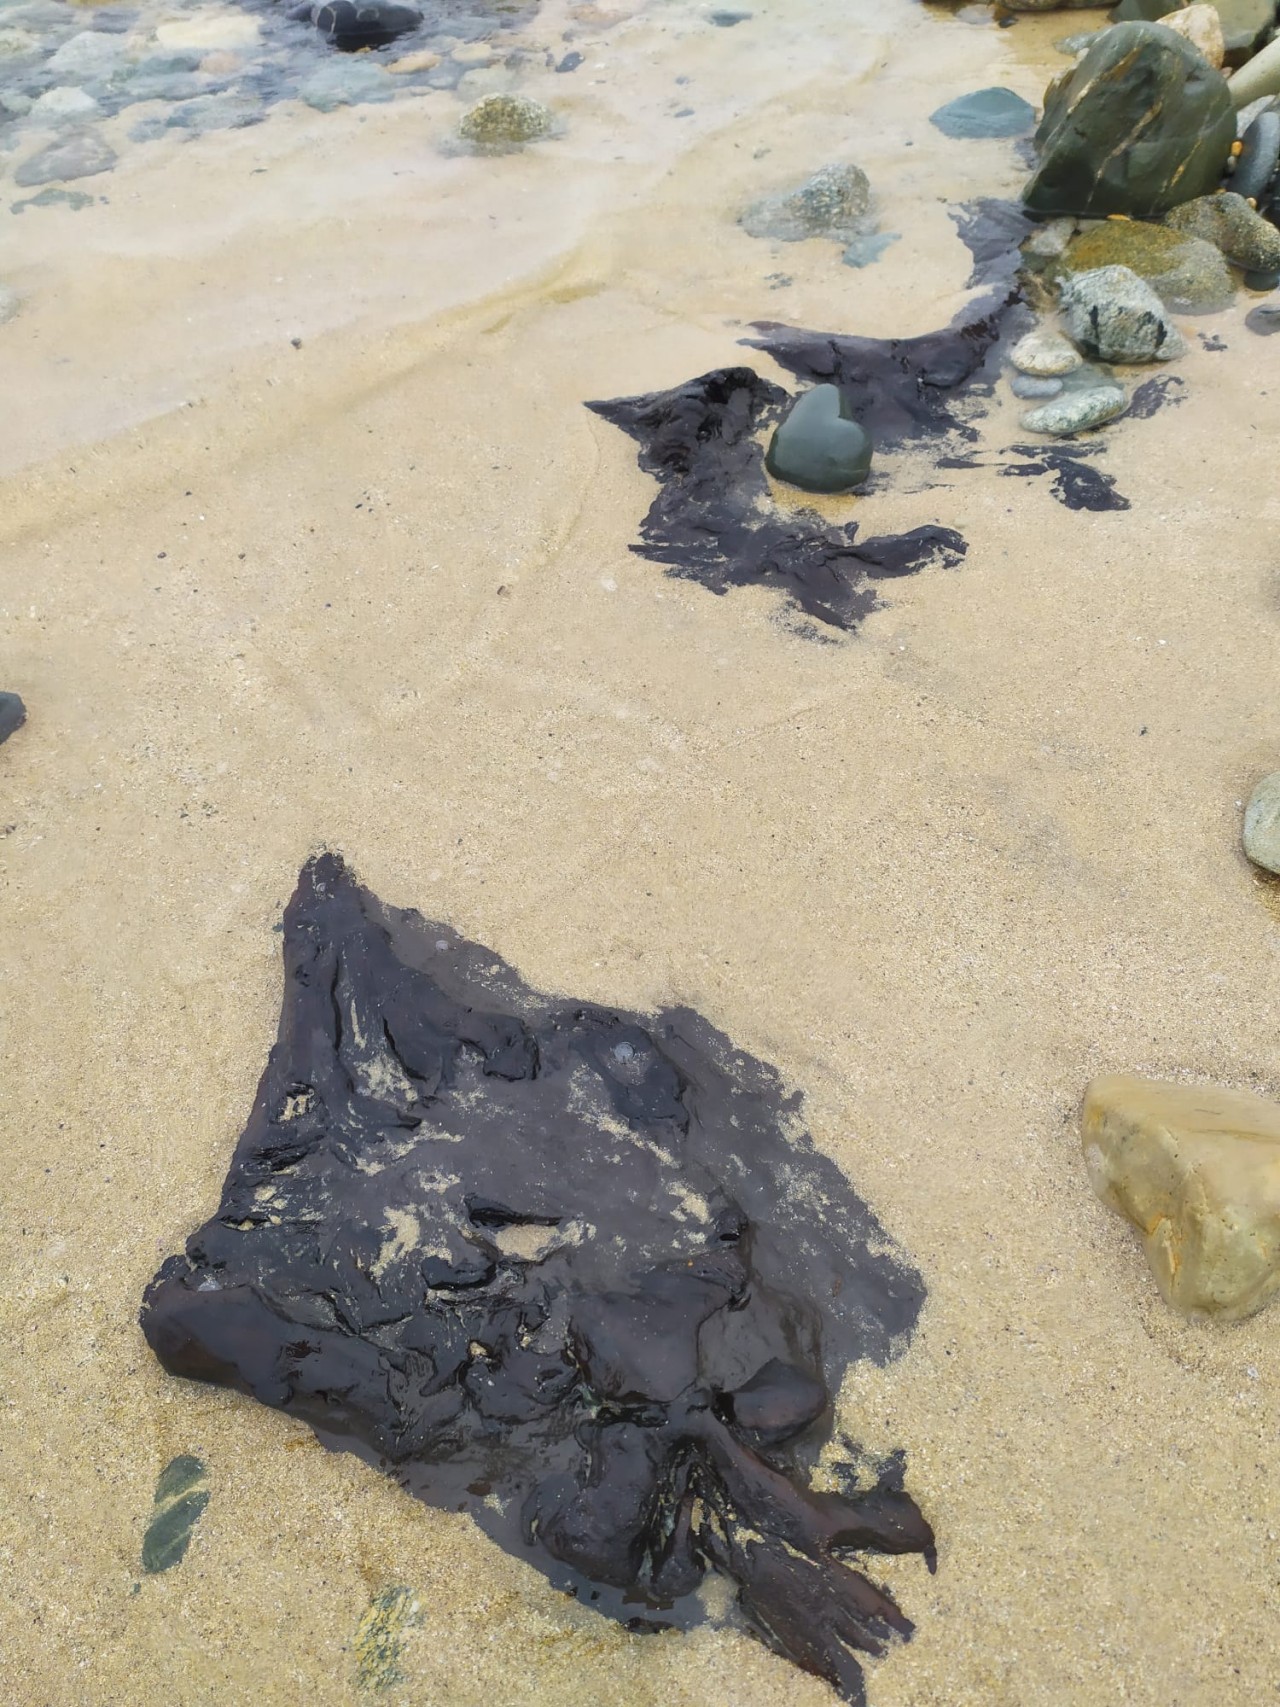 05 - Restos de un bosque fósil en la playa de Ponzos  - 17-04-2021